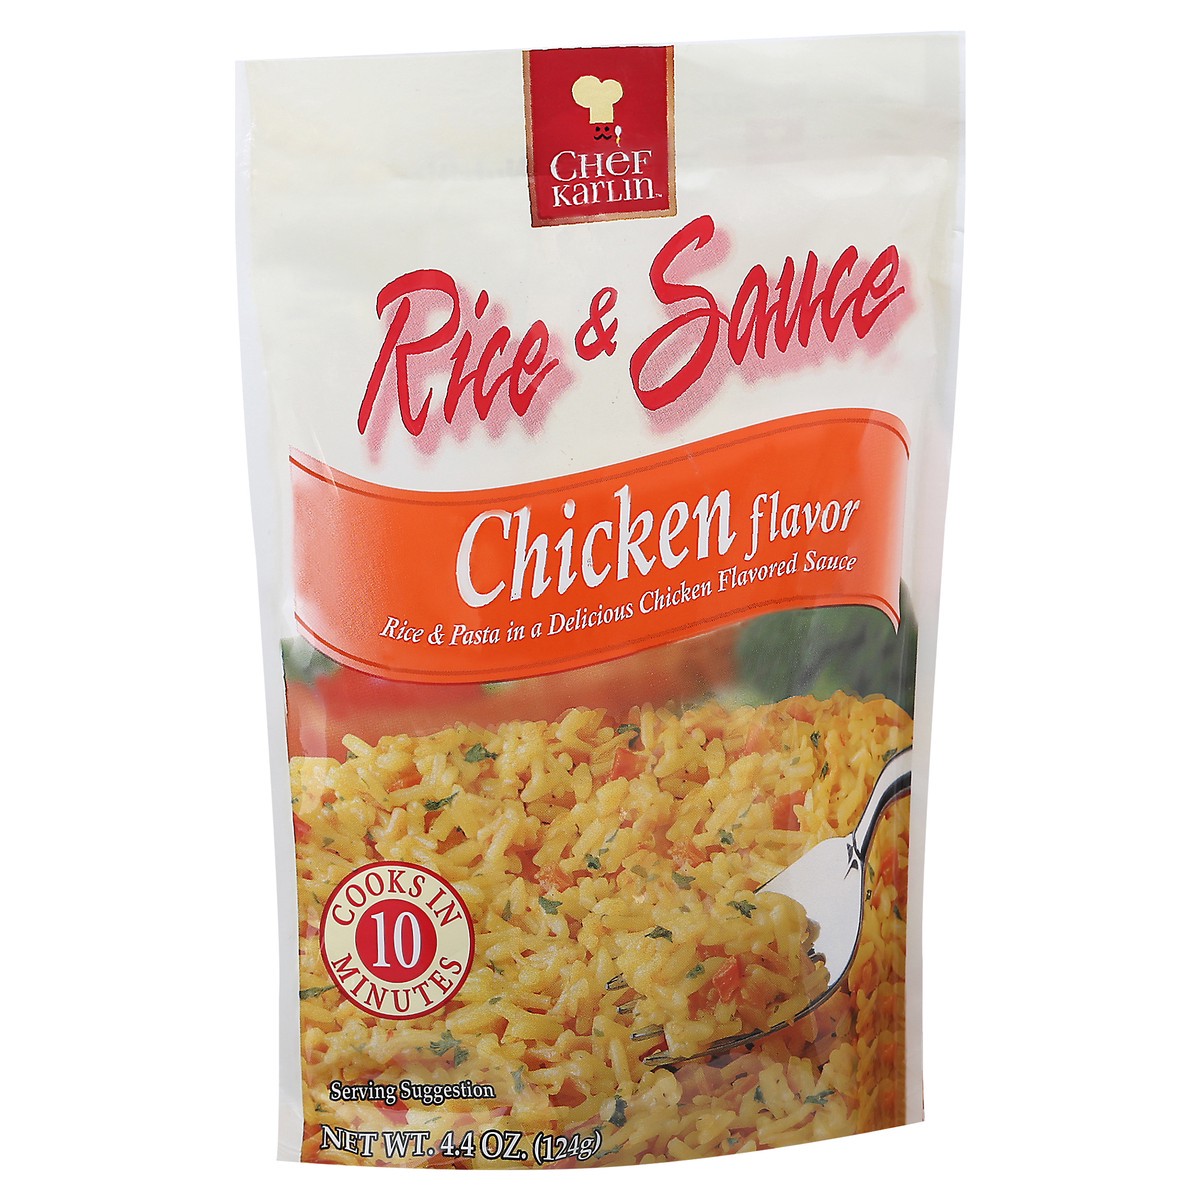 slide 7 of 14, Chef Karlin Chicken Flavor Rice & Sauce 4.4 oz, 4.4 oz